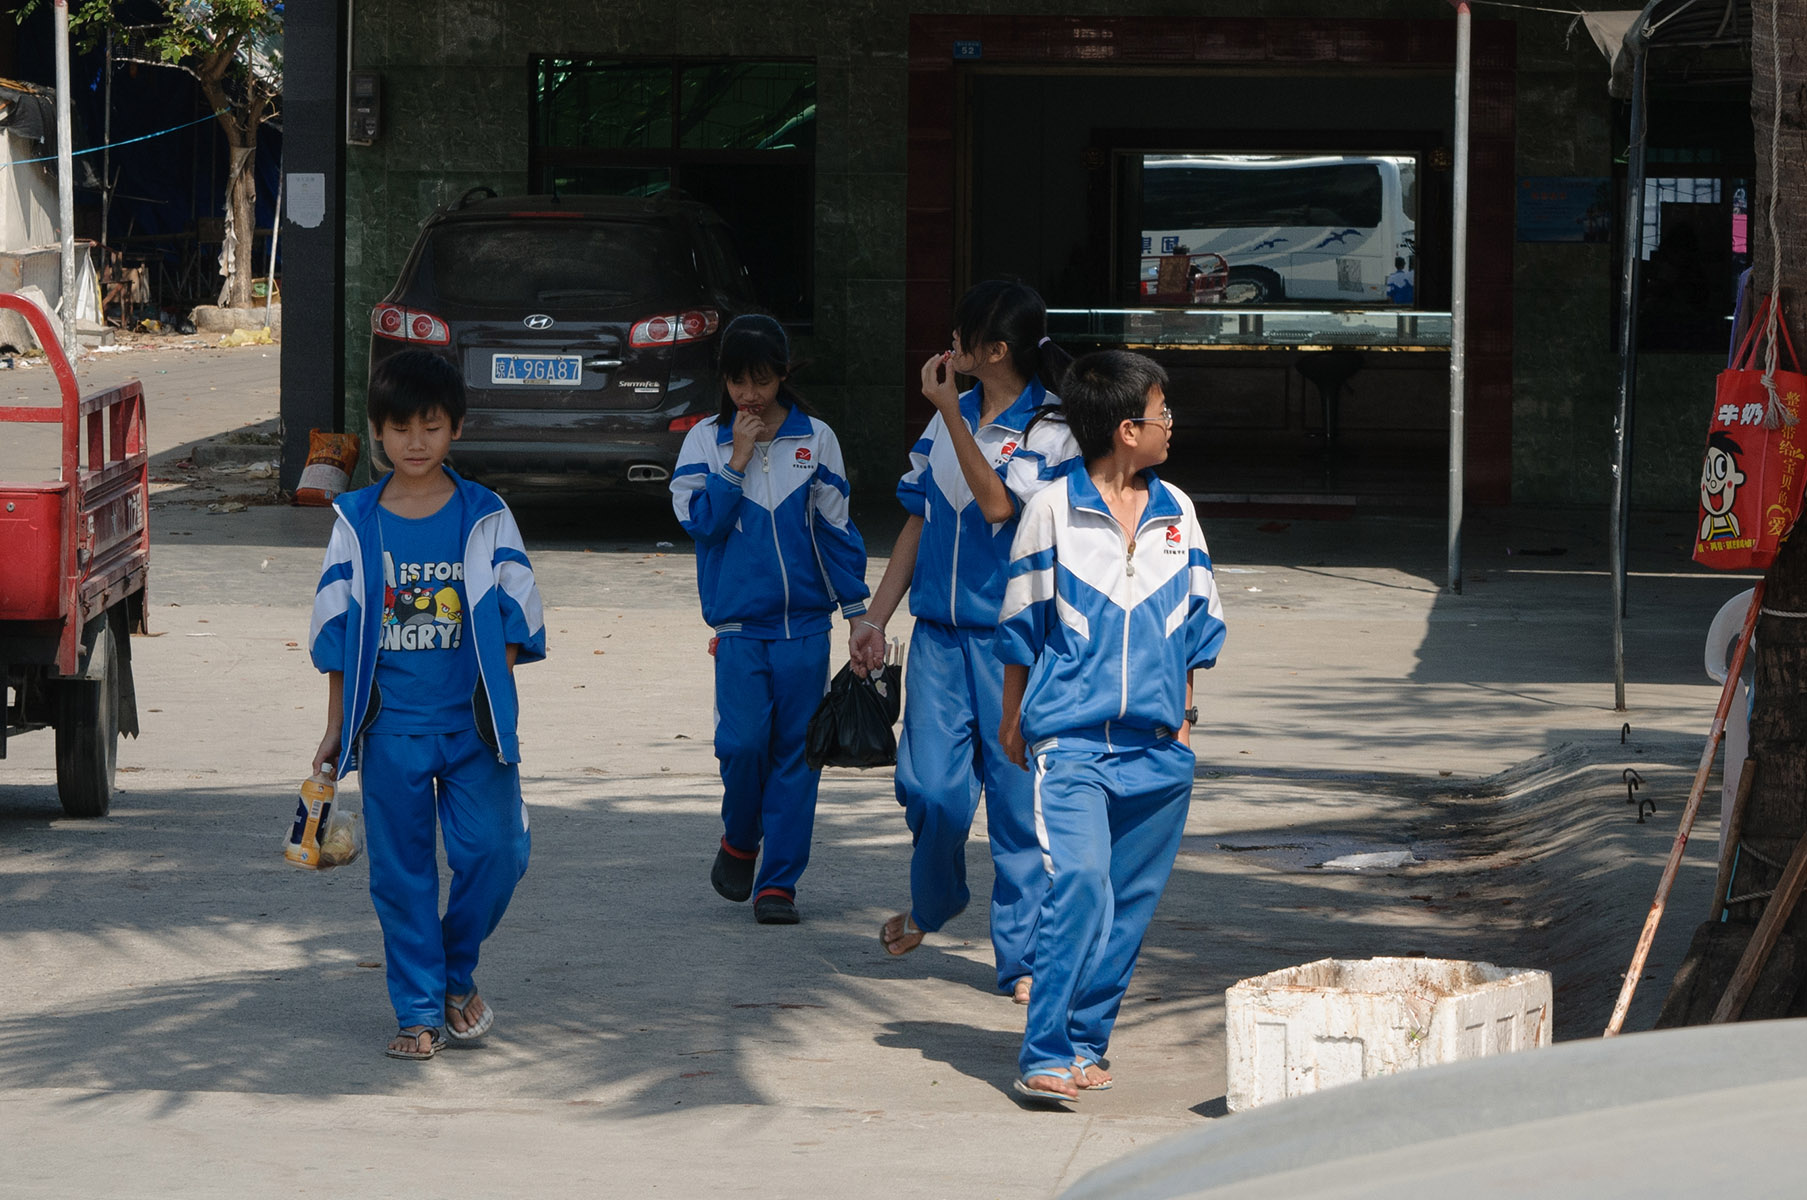 школьная форма детей из рыбацкой деревни. Хайнань.